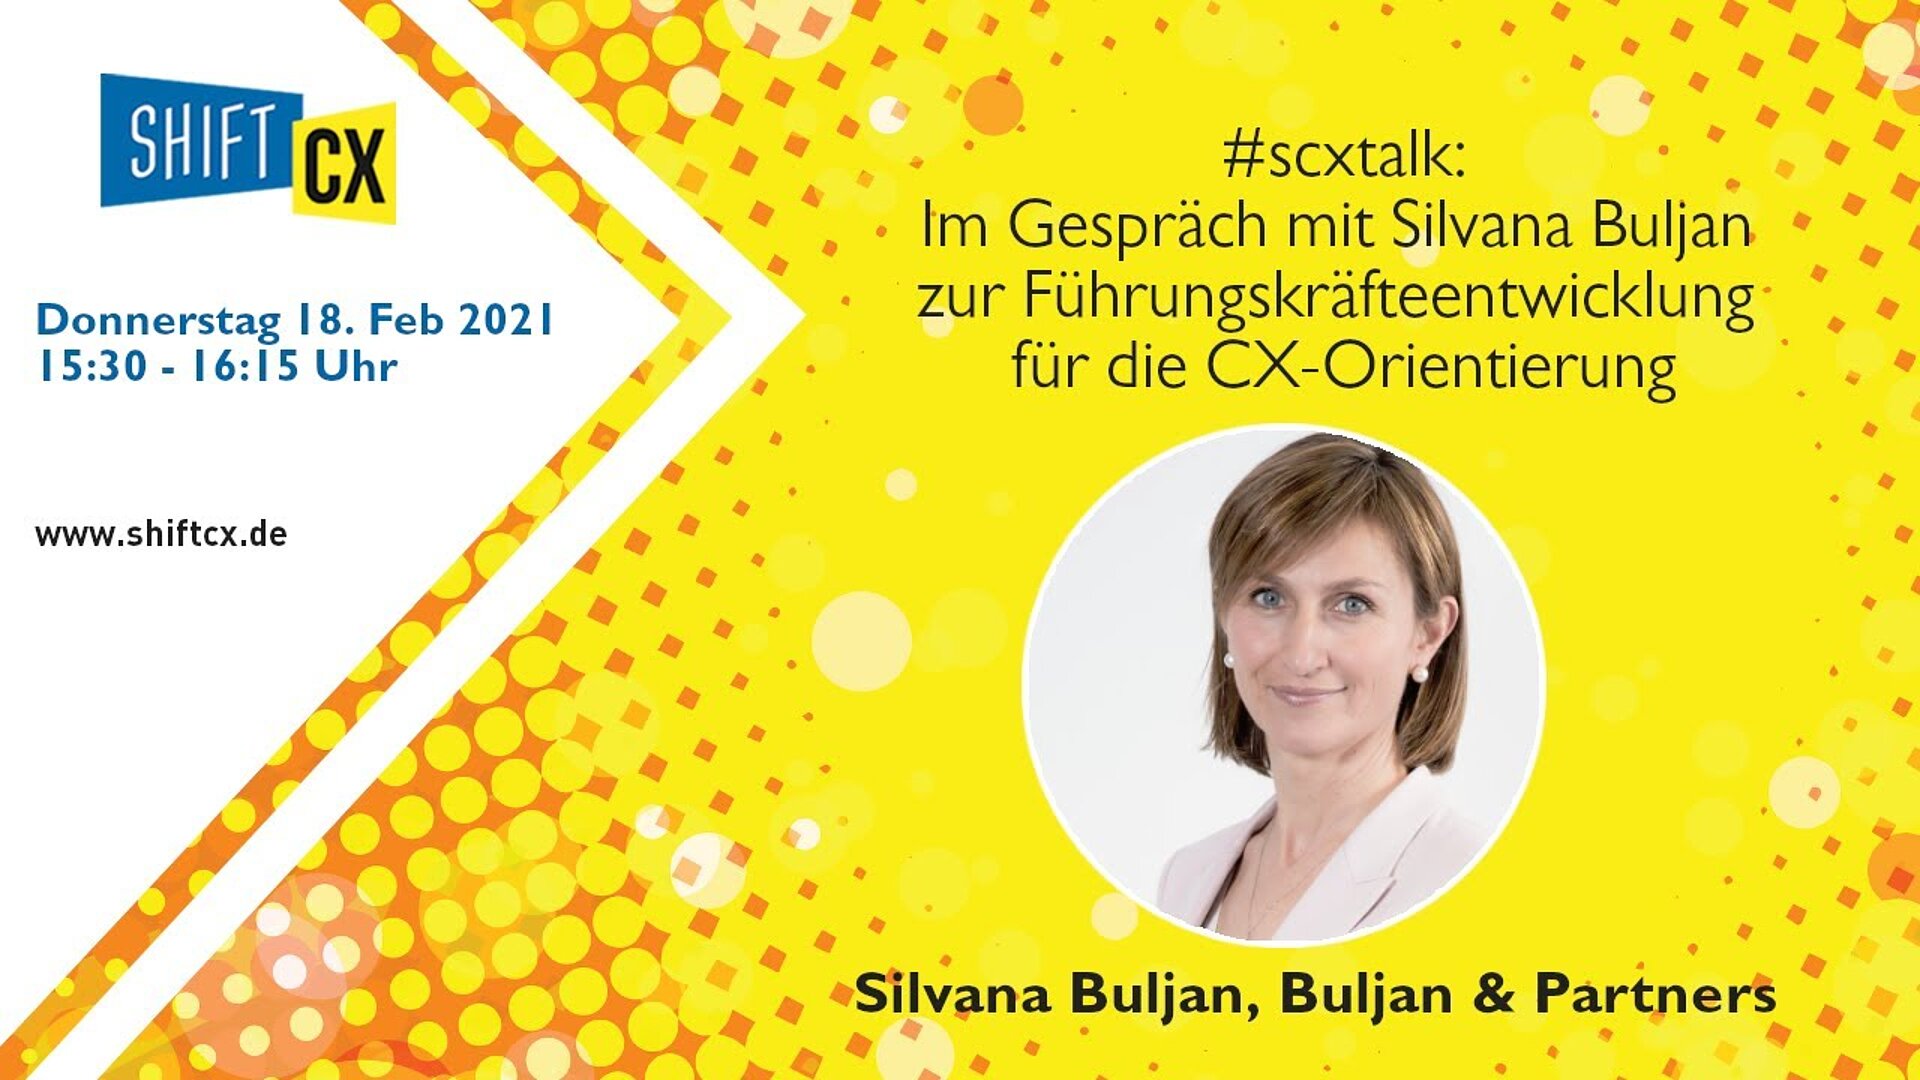 Im Gespräch mit Silvana Buljan zu den Herausforderungen bei der Führungskräfteentwicklung für die CX-Orientierung